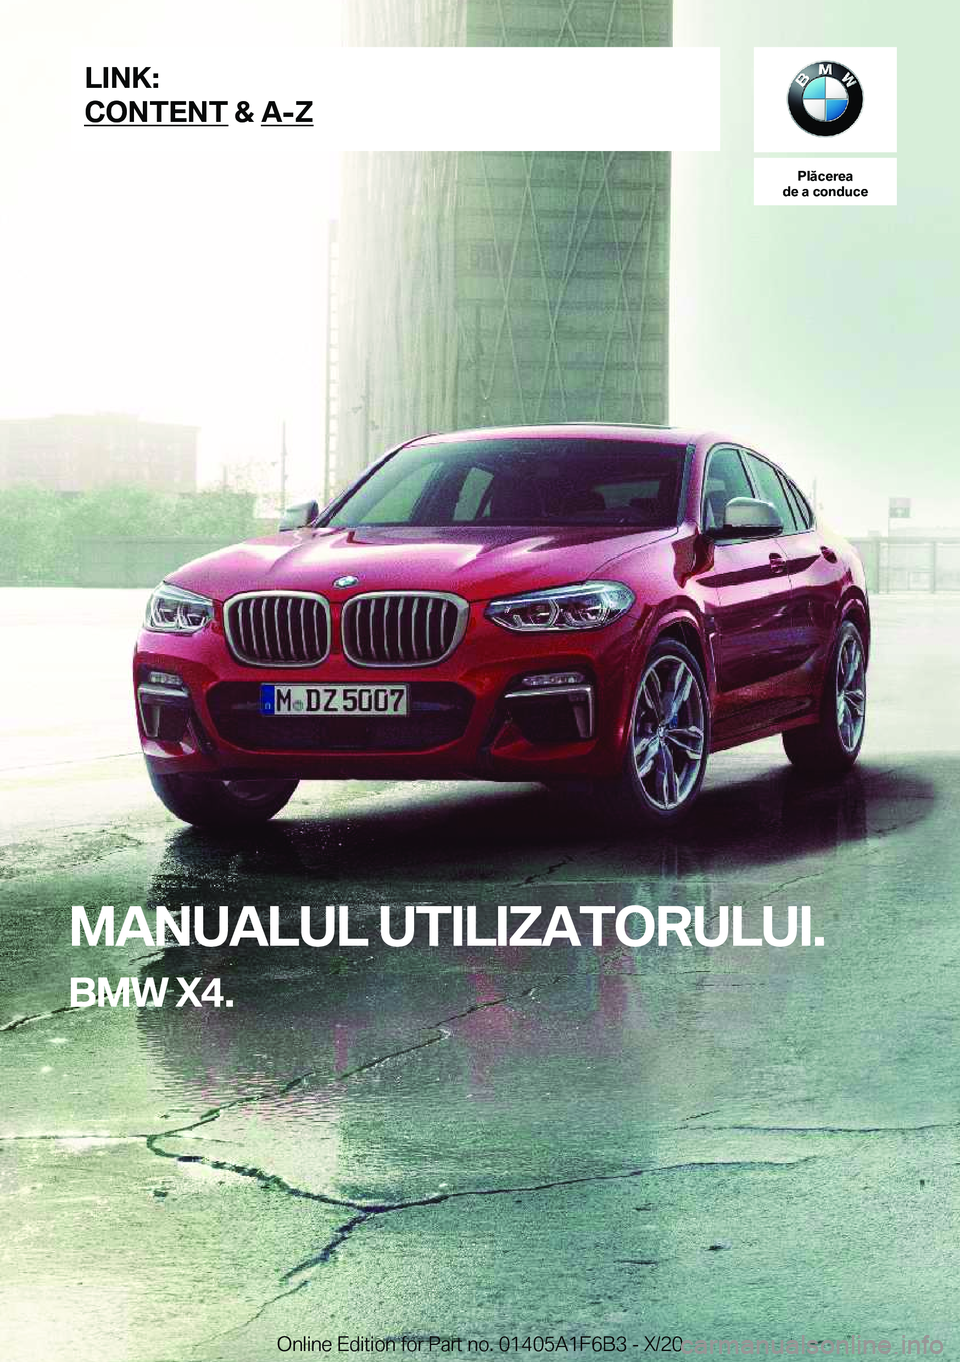 BMW X4 2021  Ghiduri De Utilizare (in Romanian) �P�l�ă�c�e�r�e�a
�d�e��a��c�o�n�d�u�c�e
�M�A�N�U�A�L�U�L��U�T�I�L�I�Z�A�T�O�R�U�L�U�I�.
�B�M�W��X�4�.�L�I�N�K�:
�C�O�N�T�E�N�T��&��A�-�Z�O�n�l�i�n�e��E�d�i�t�i�o�n��f�o�r��P�a�r�t��n�o�.��